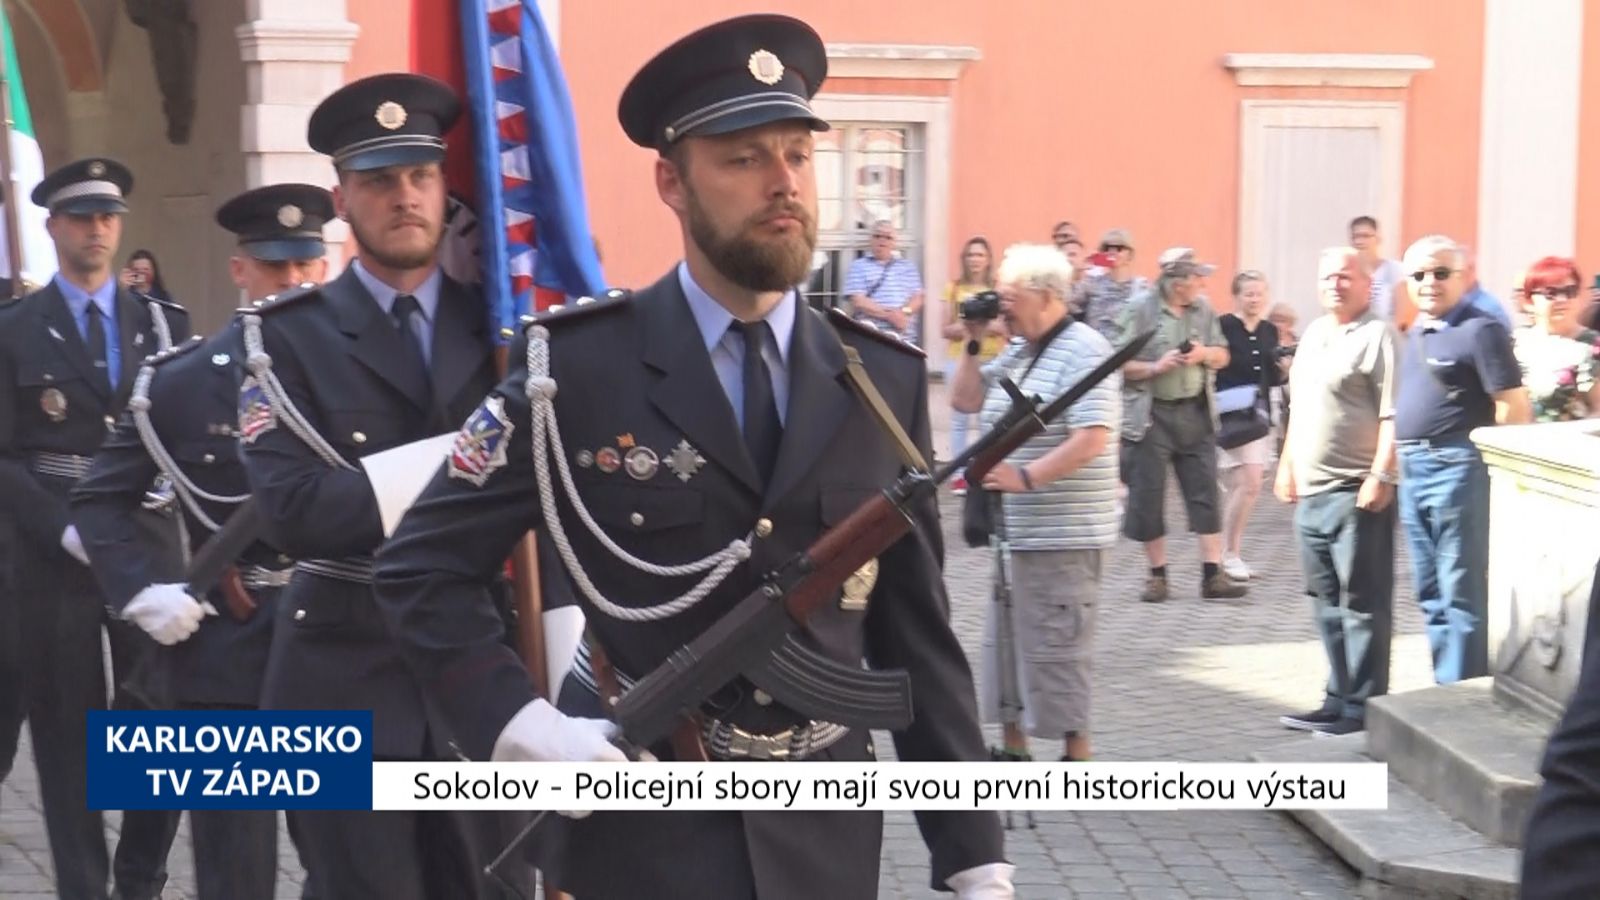 Sokolov: Policejní sbory mají svou první historickou výstavu (TV Západ)